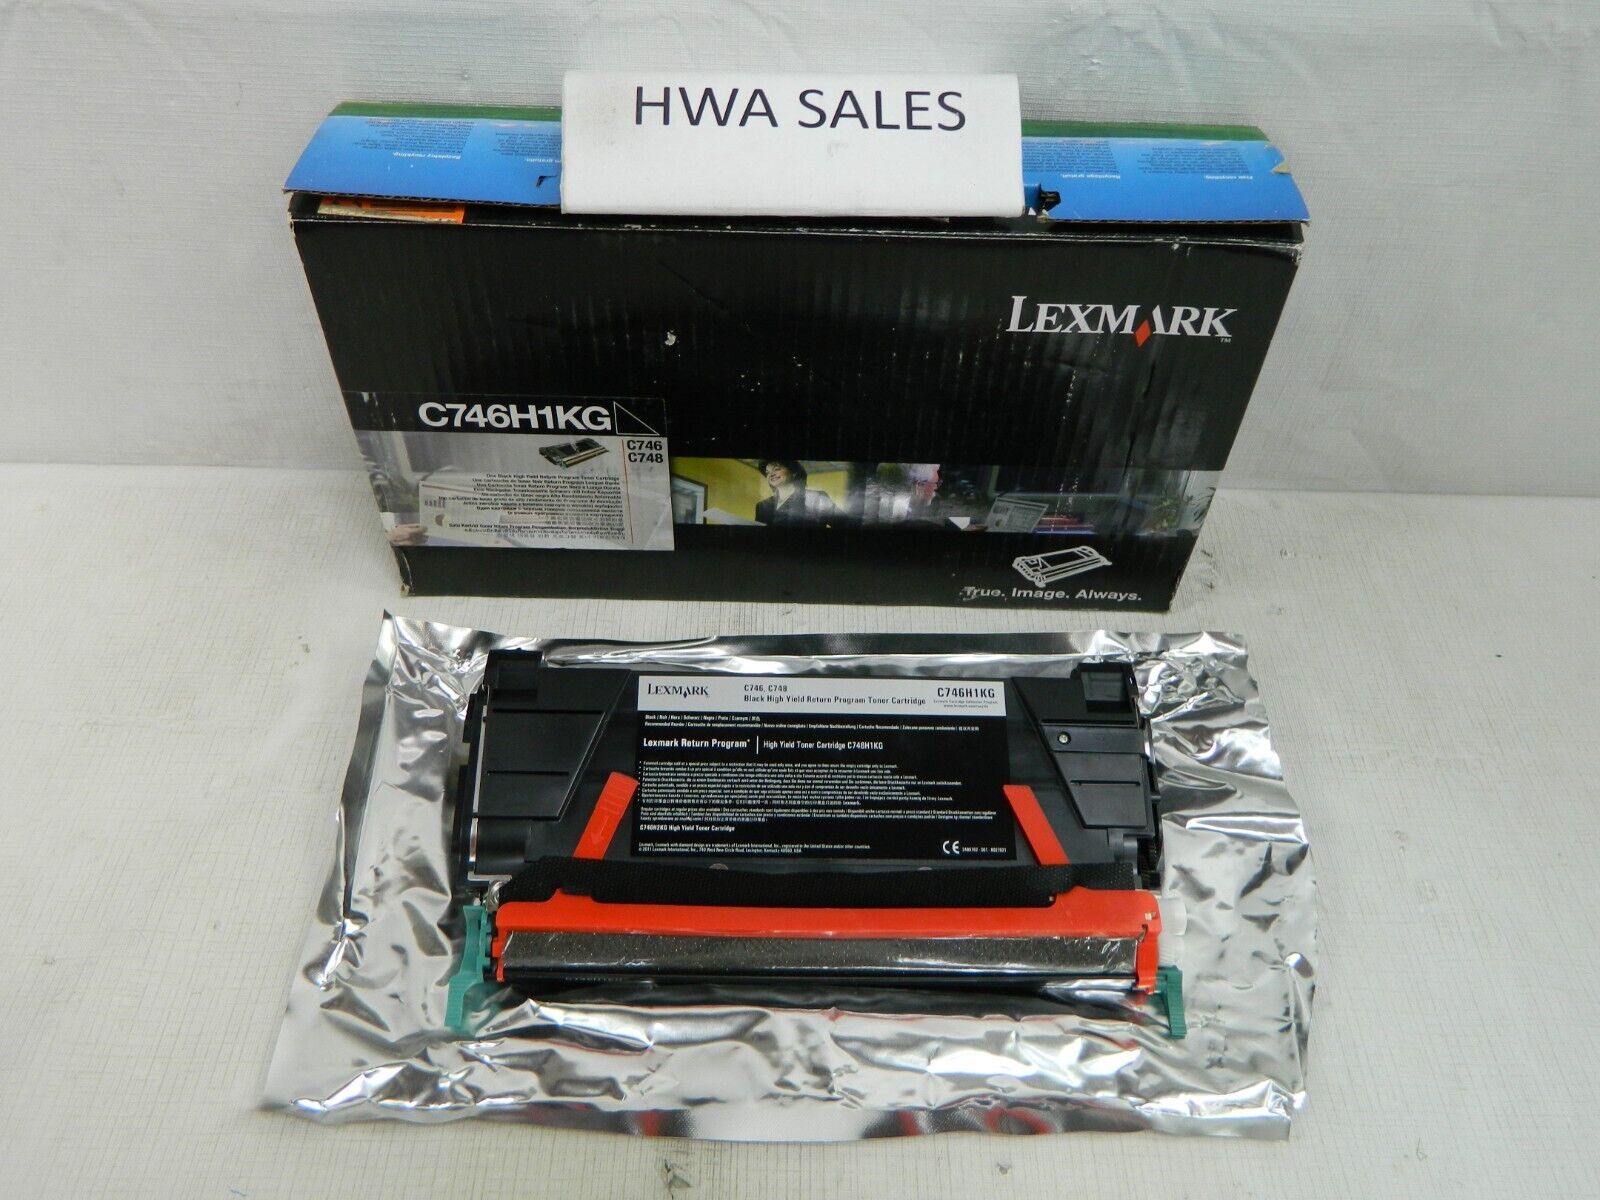 Genuine Lexmark C746H1KG Return Program Toner Cartridge NEW OEM OPEN BOX